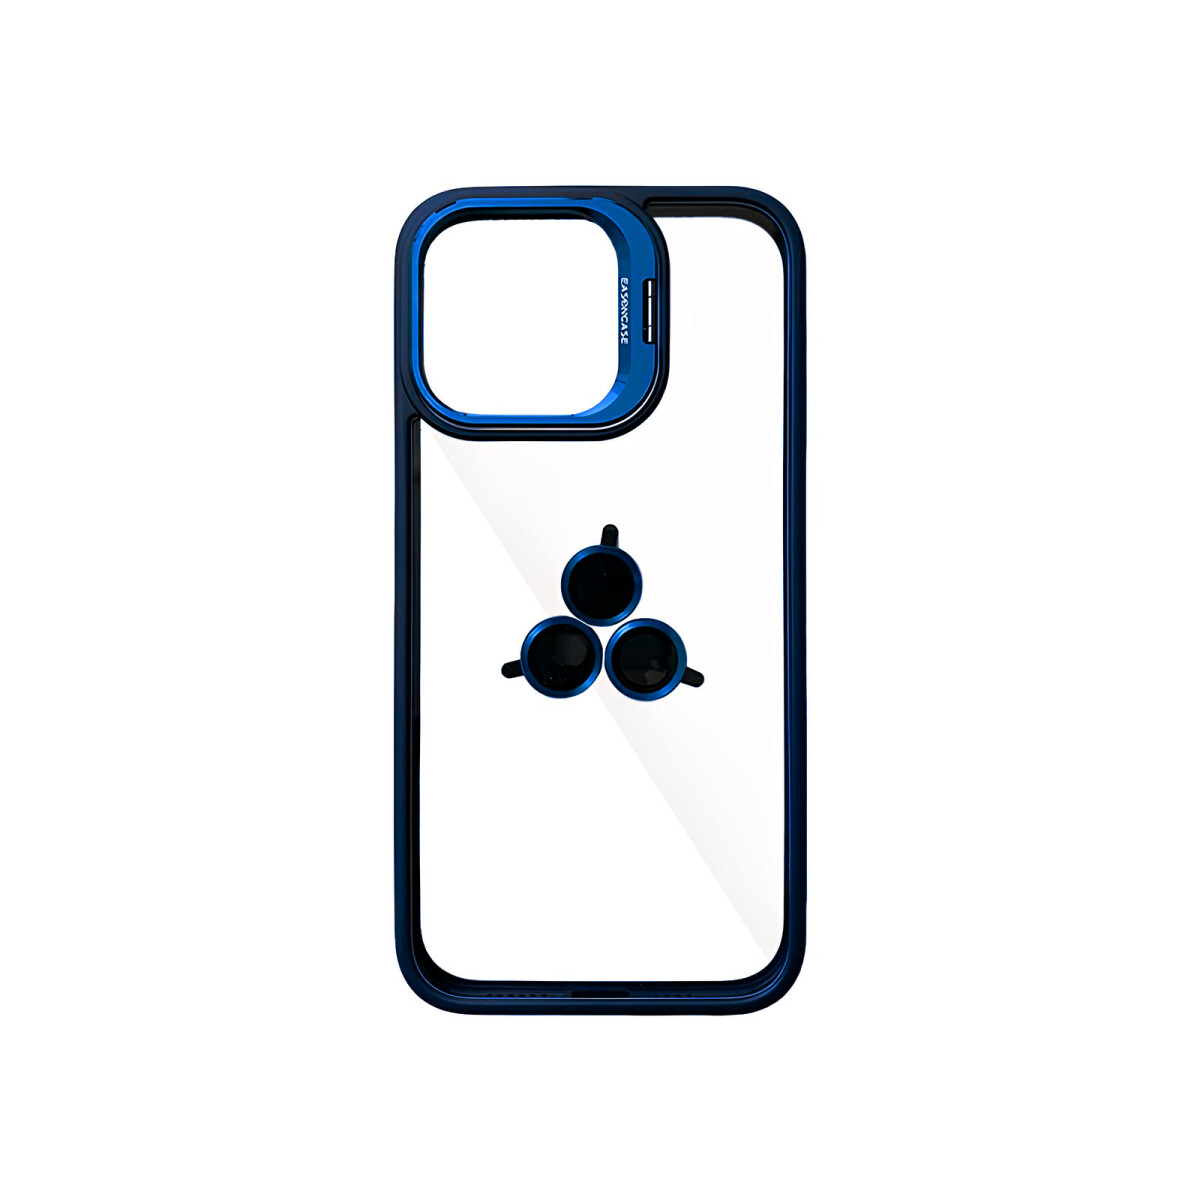 Case Transparente con Borde de Color y Protector de Lente Iphone 11 - Blue 